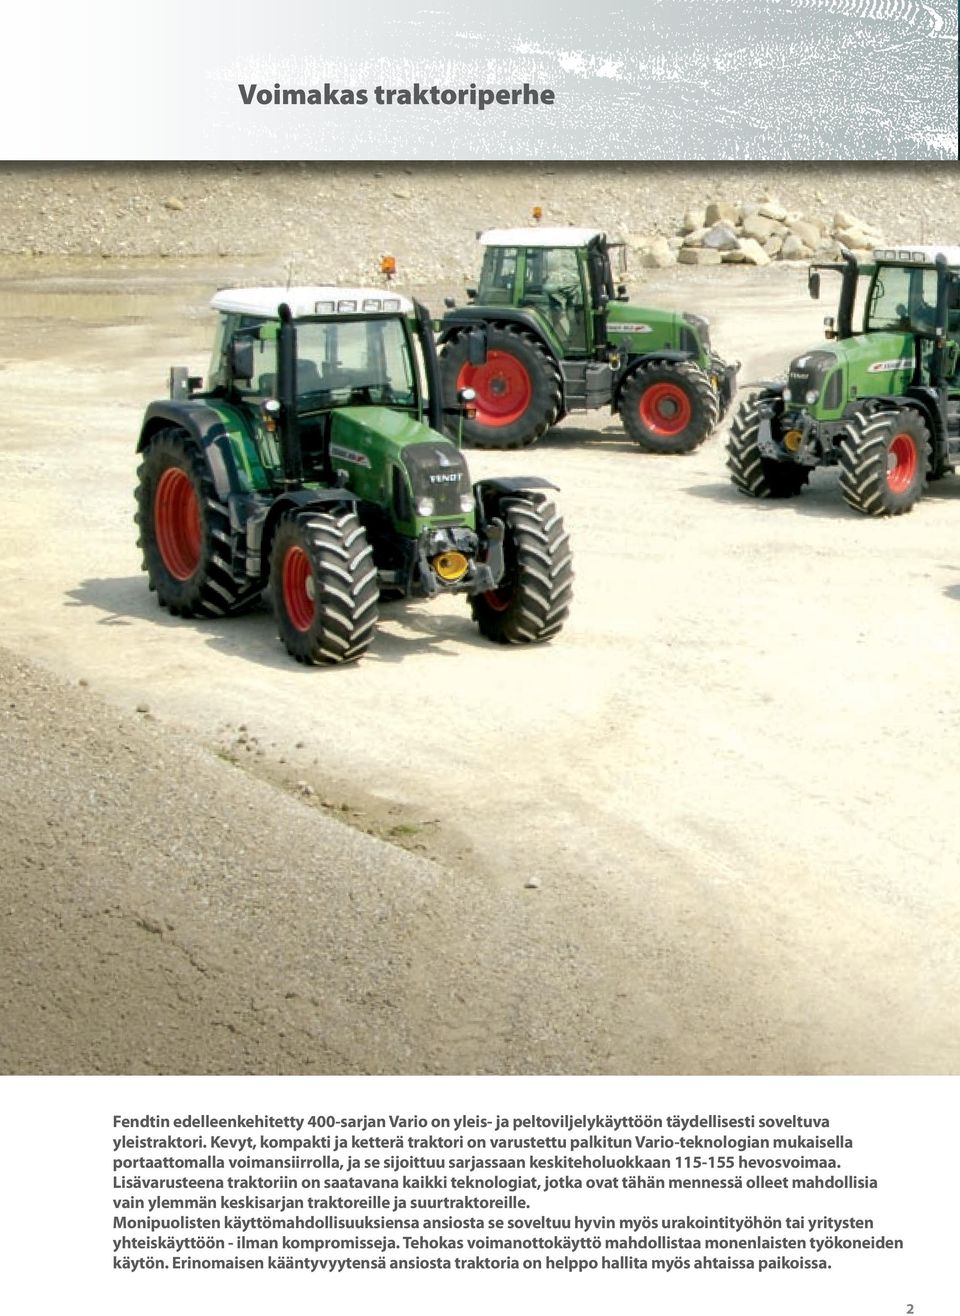 Lisävarusteena traktoriin on saatavana kaikki teknologiat, jotka ovat tähän mennessä olleet mahdollisia vain ylemmän keskisarjan traktoreille ja suurtraktoreille.